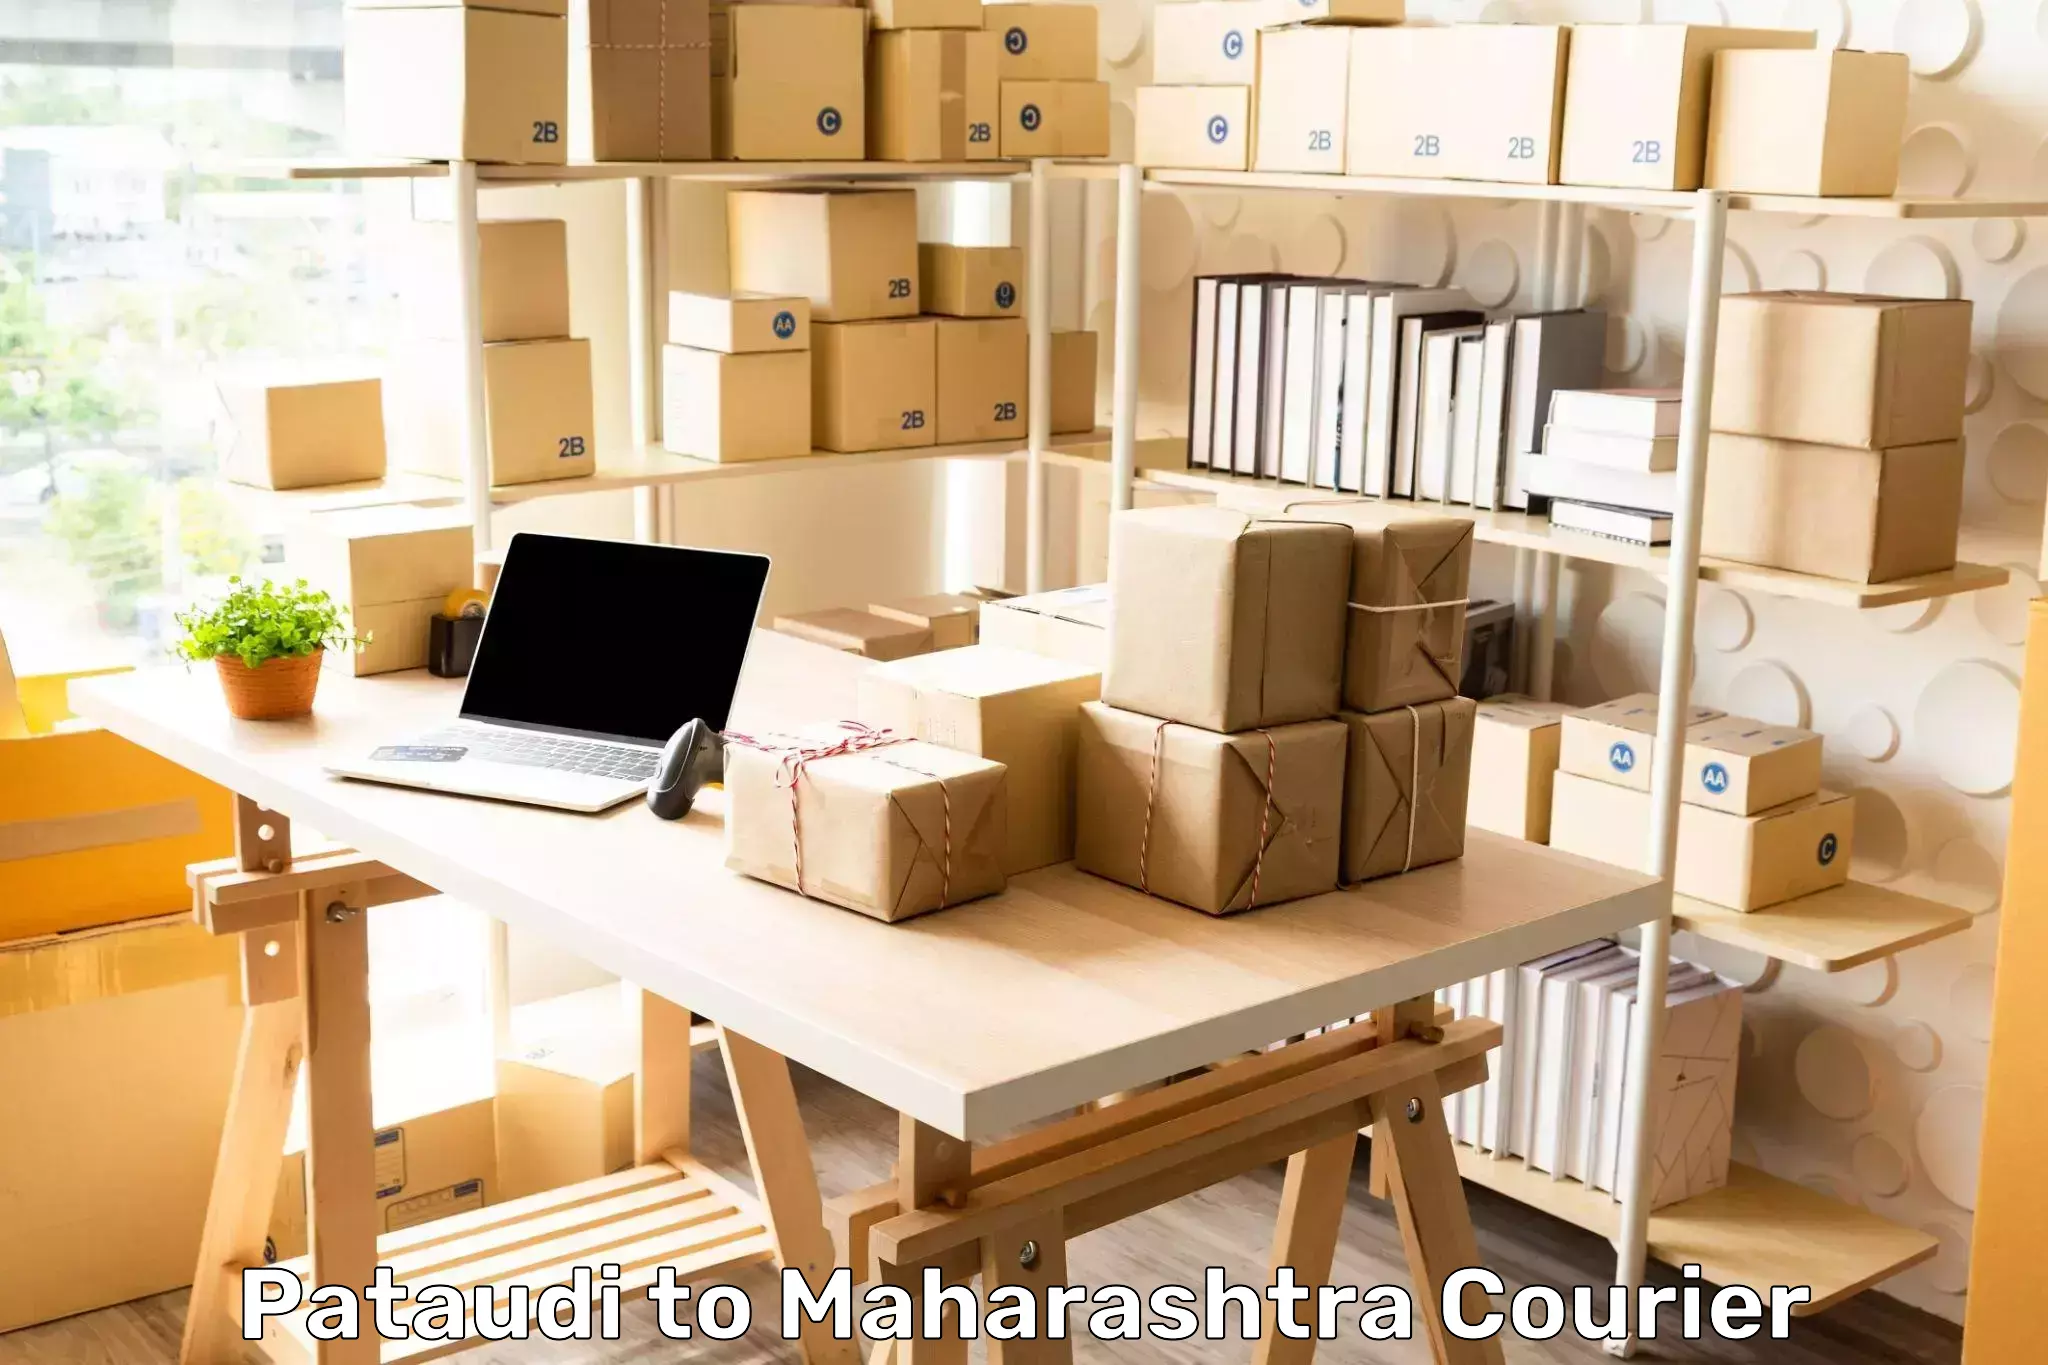 Business shipping needs Pataudi to IIIT Pune